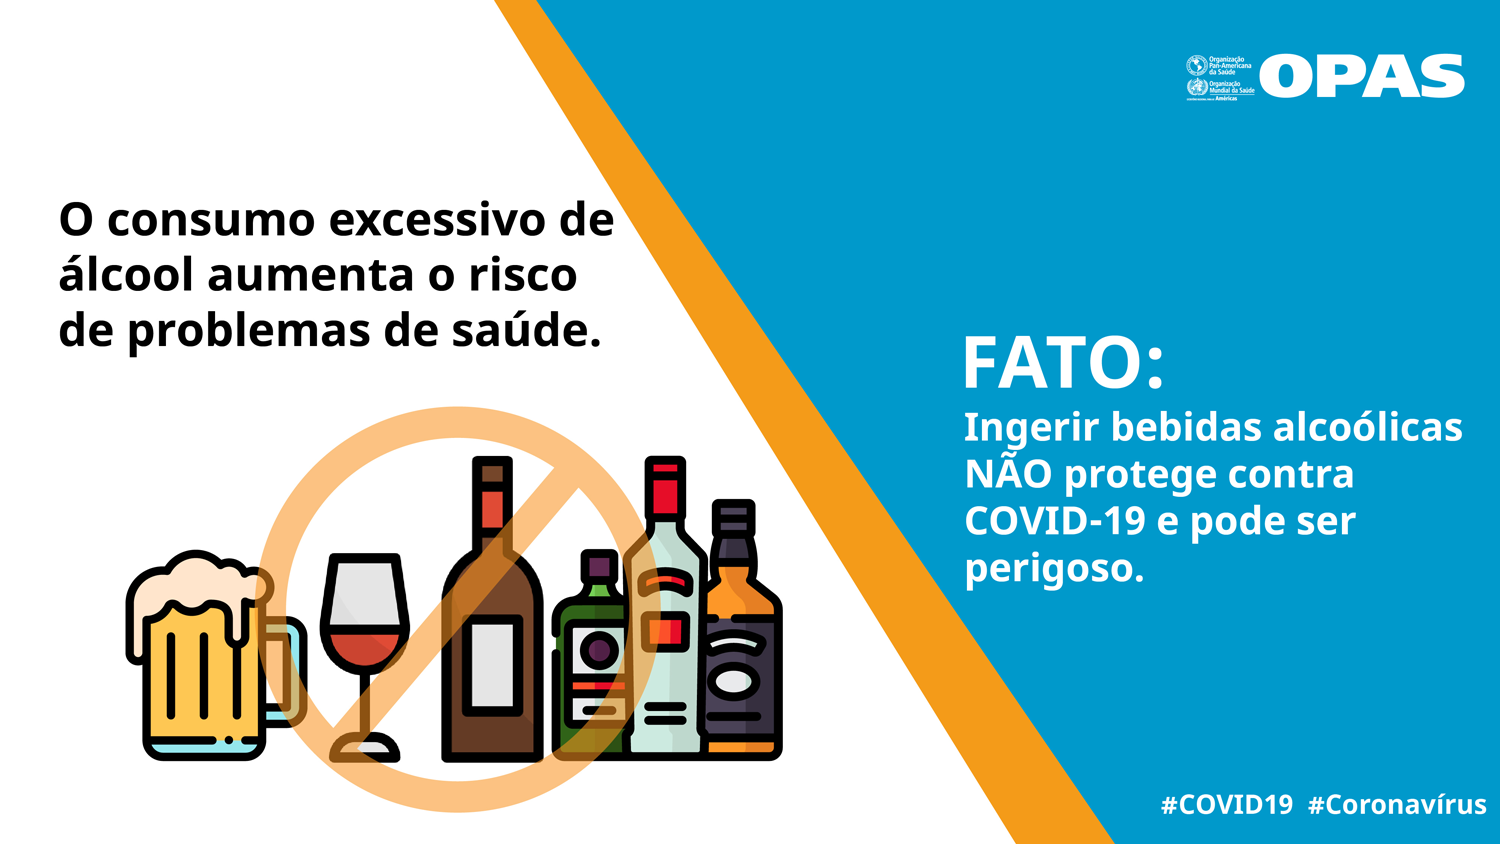 FATO: Ingerir bebidas alcoólicas NÃO protege contra COVID-19 e pode ser perigoso.